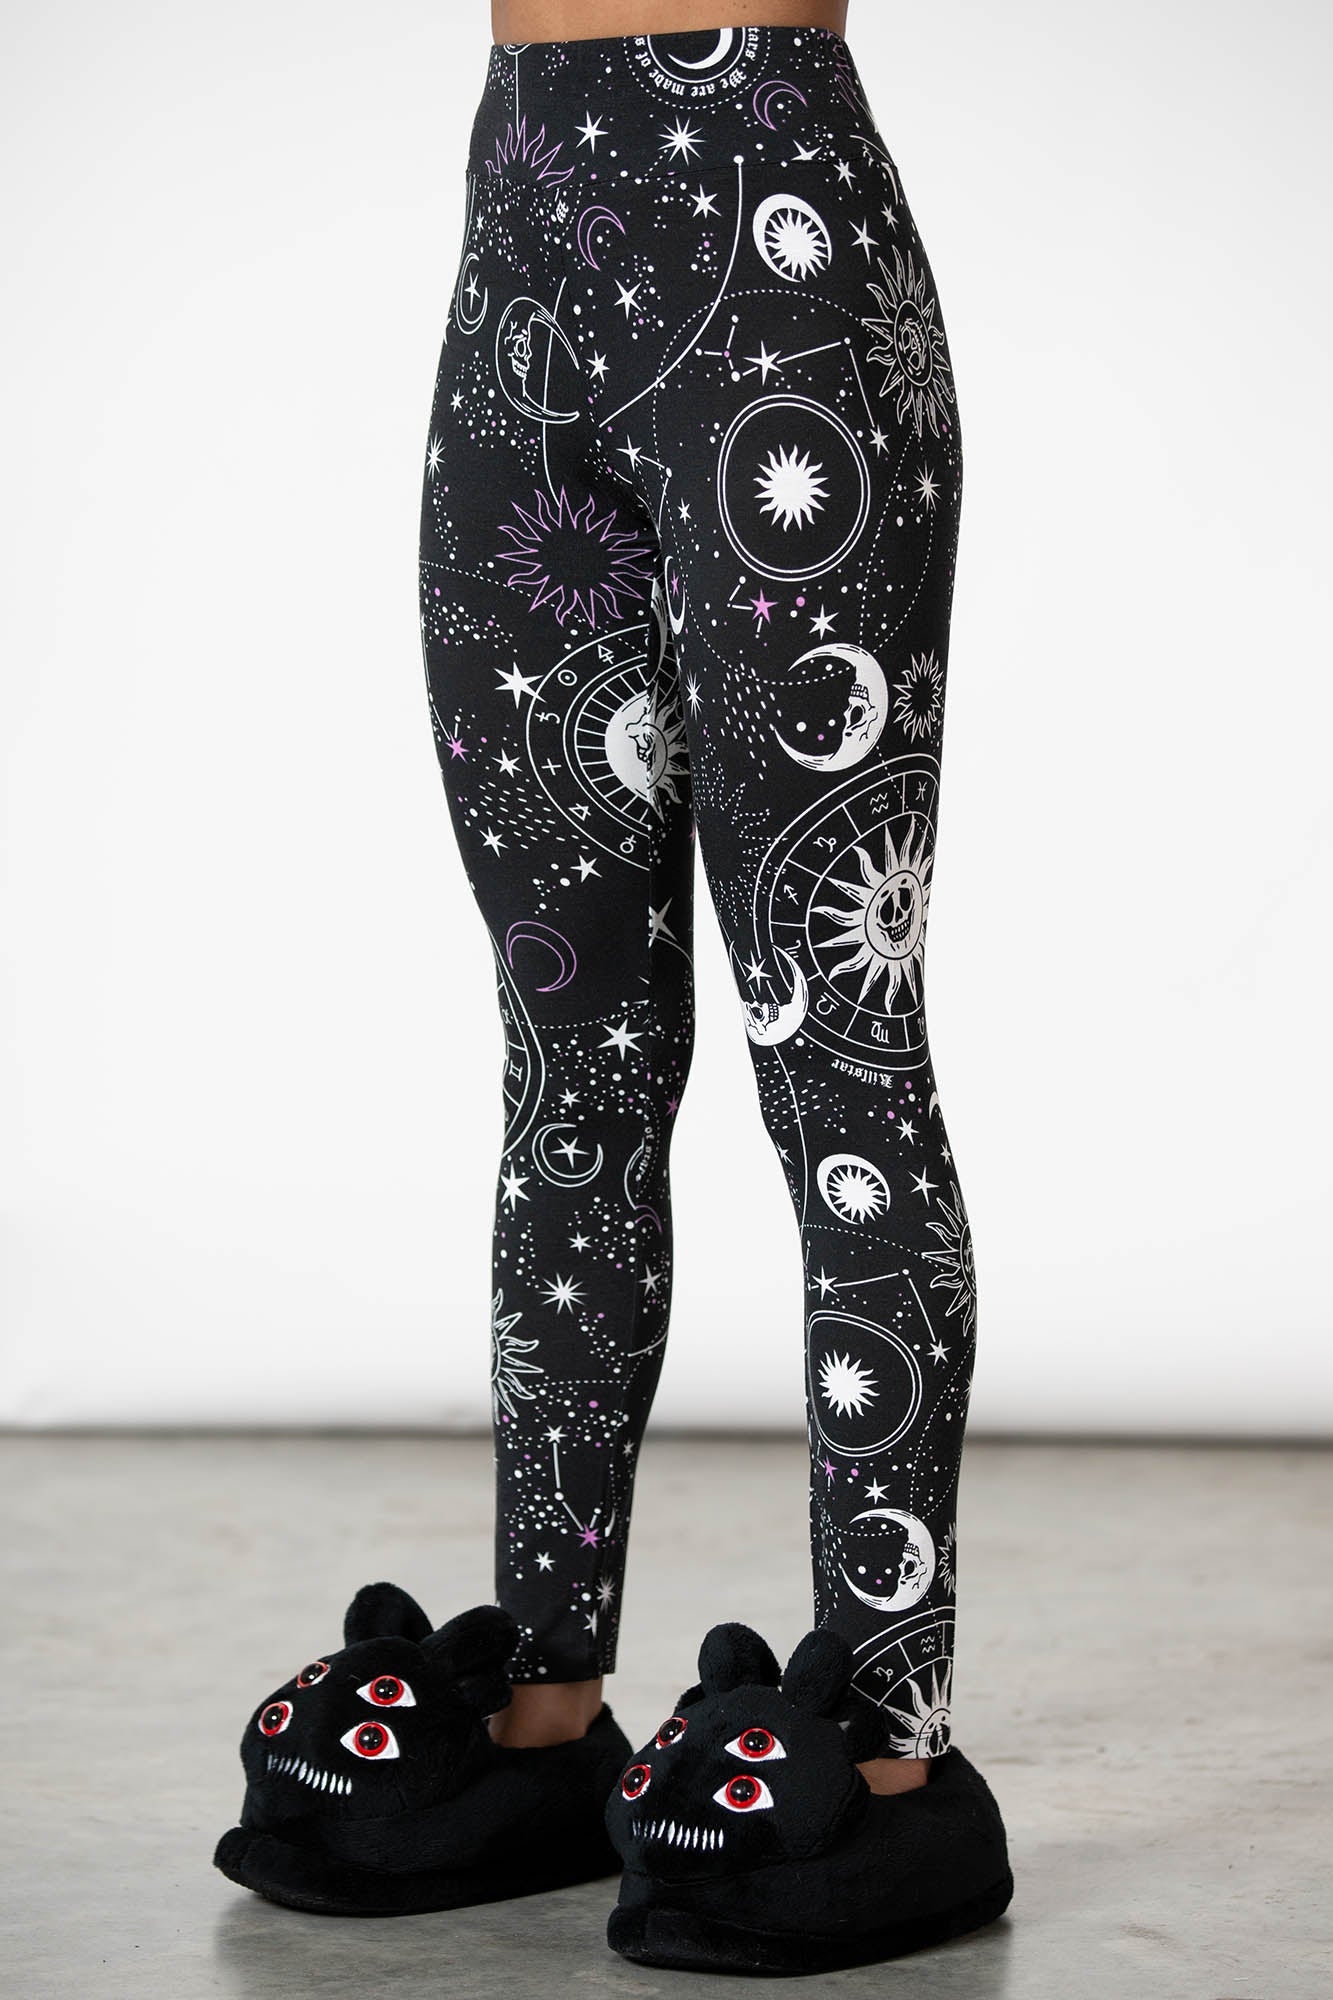 4xl Design Punk Rock Fashion Women Digital Print Galaxy Leggings